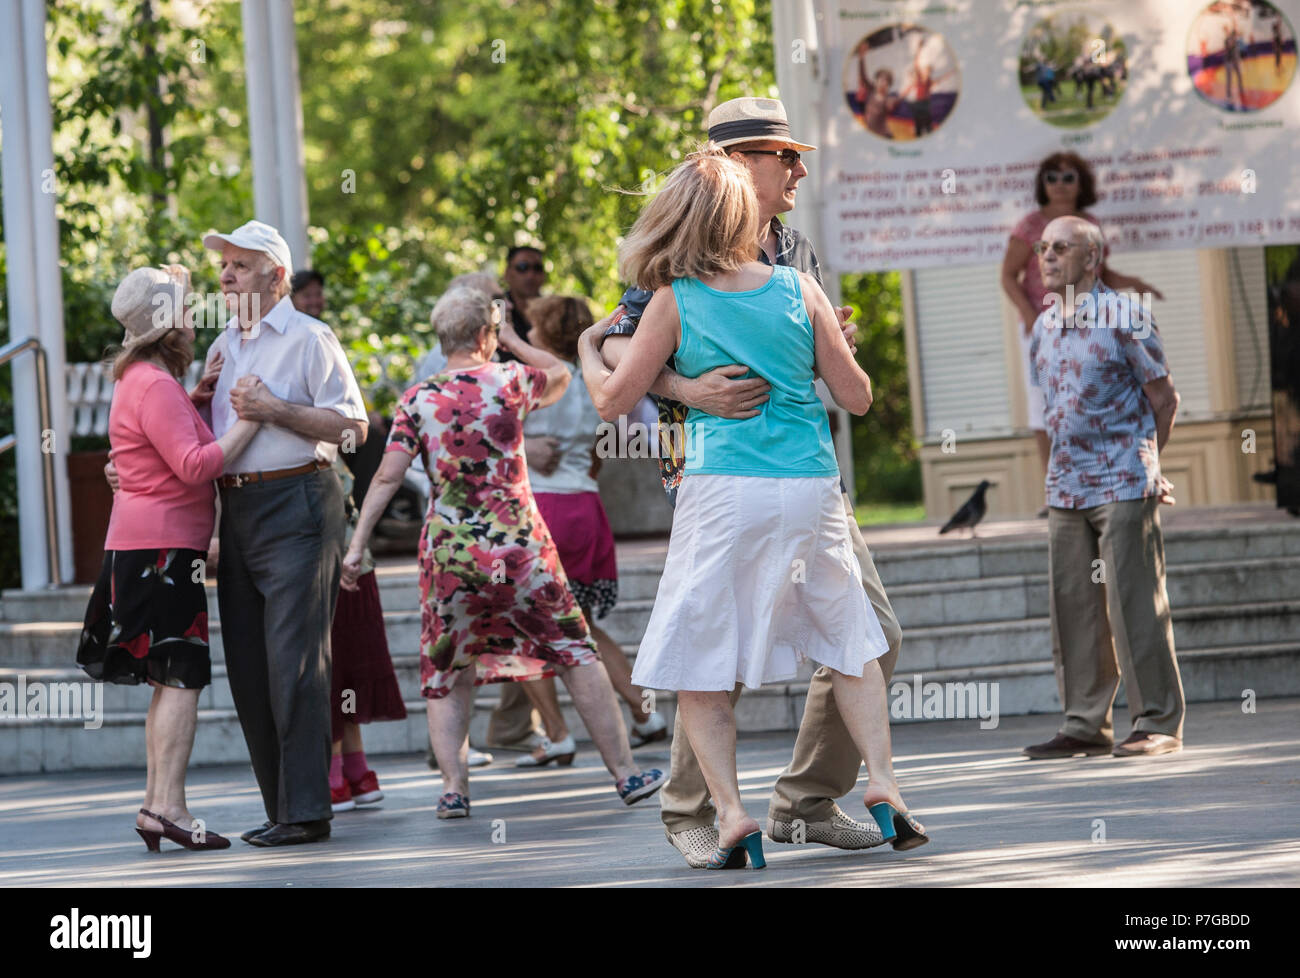 Le persone anziane in ballo nel parco Sokolniki a Mosca, in Russia. Molti parchi di Mosca hanno un luogo dove i pensionati e gli altri si possono incontrare e di danza. Foto Stock